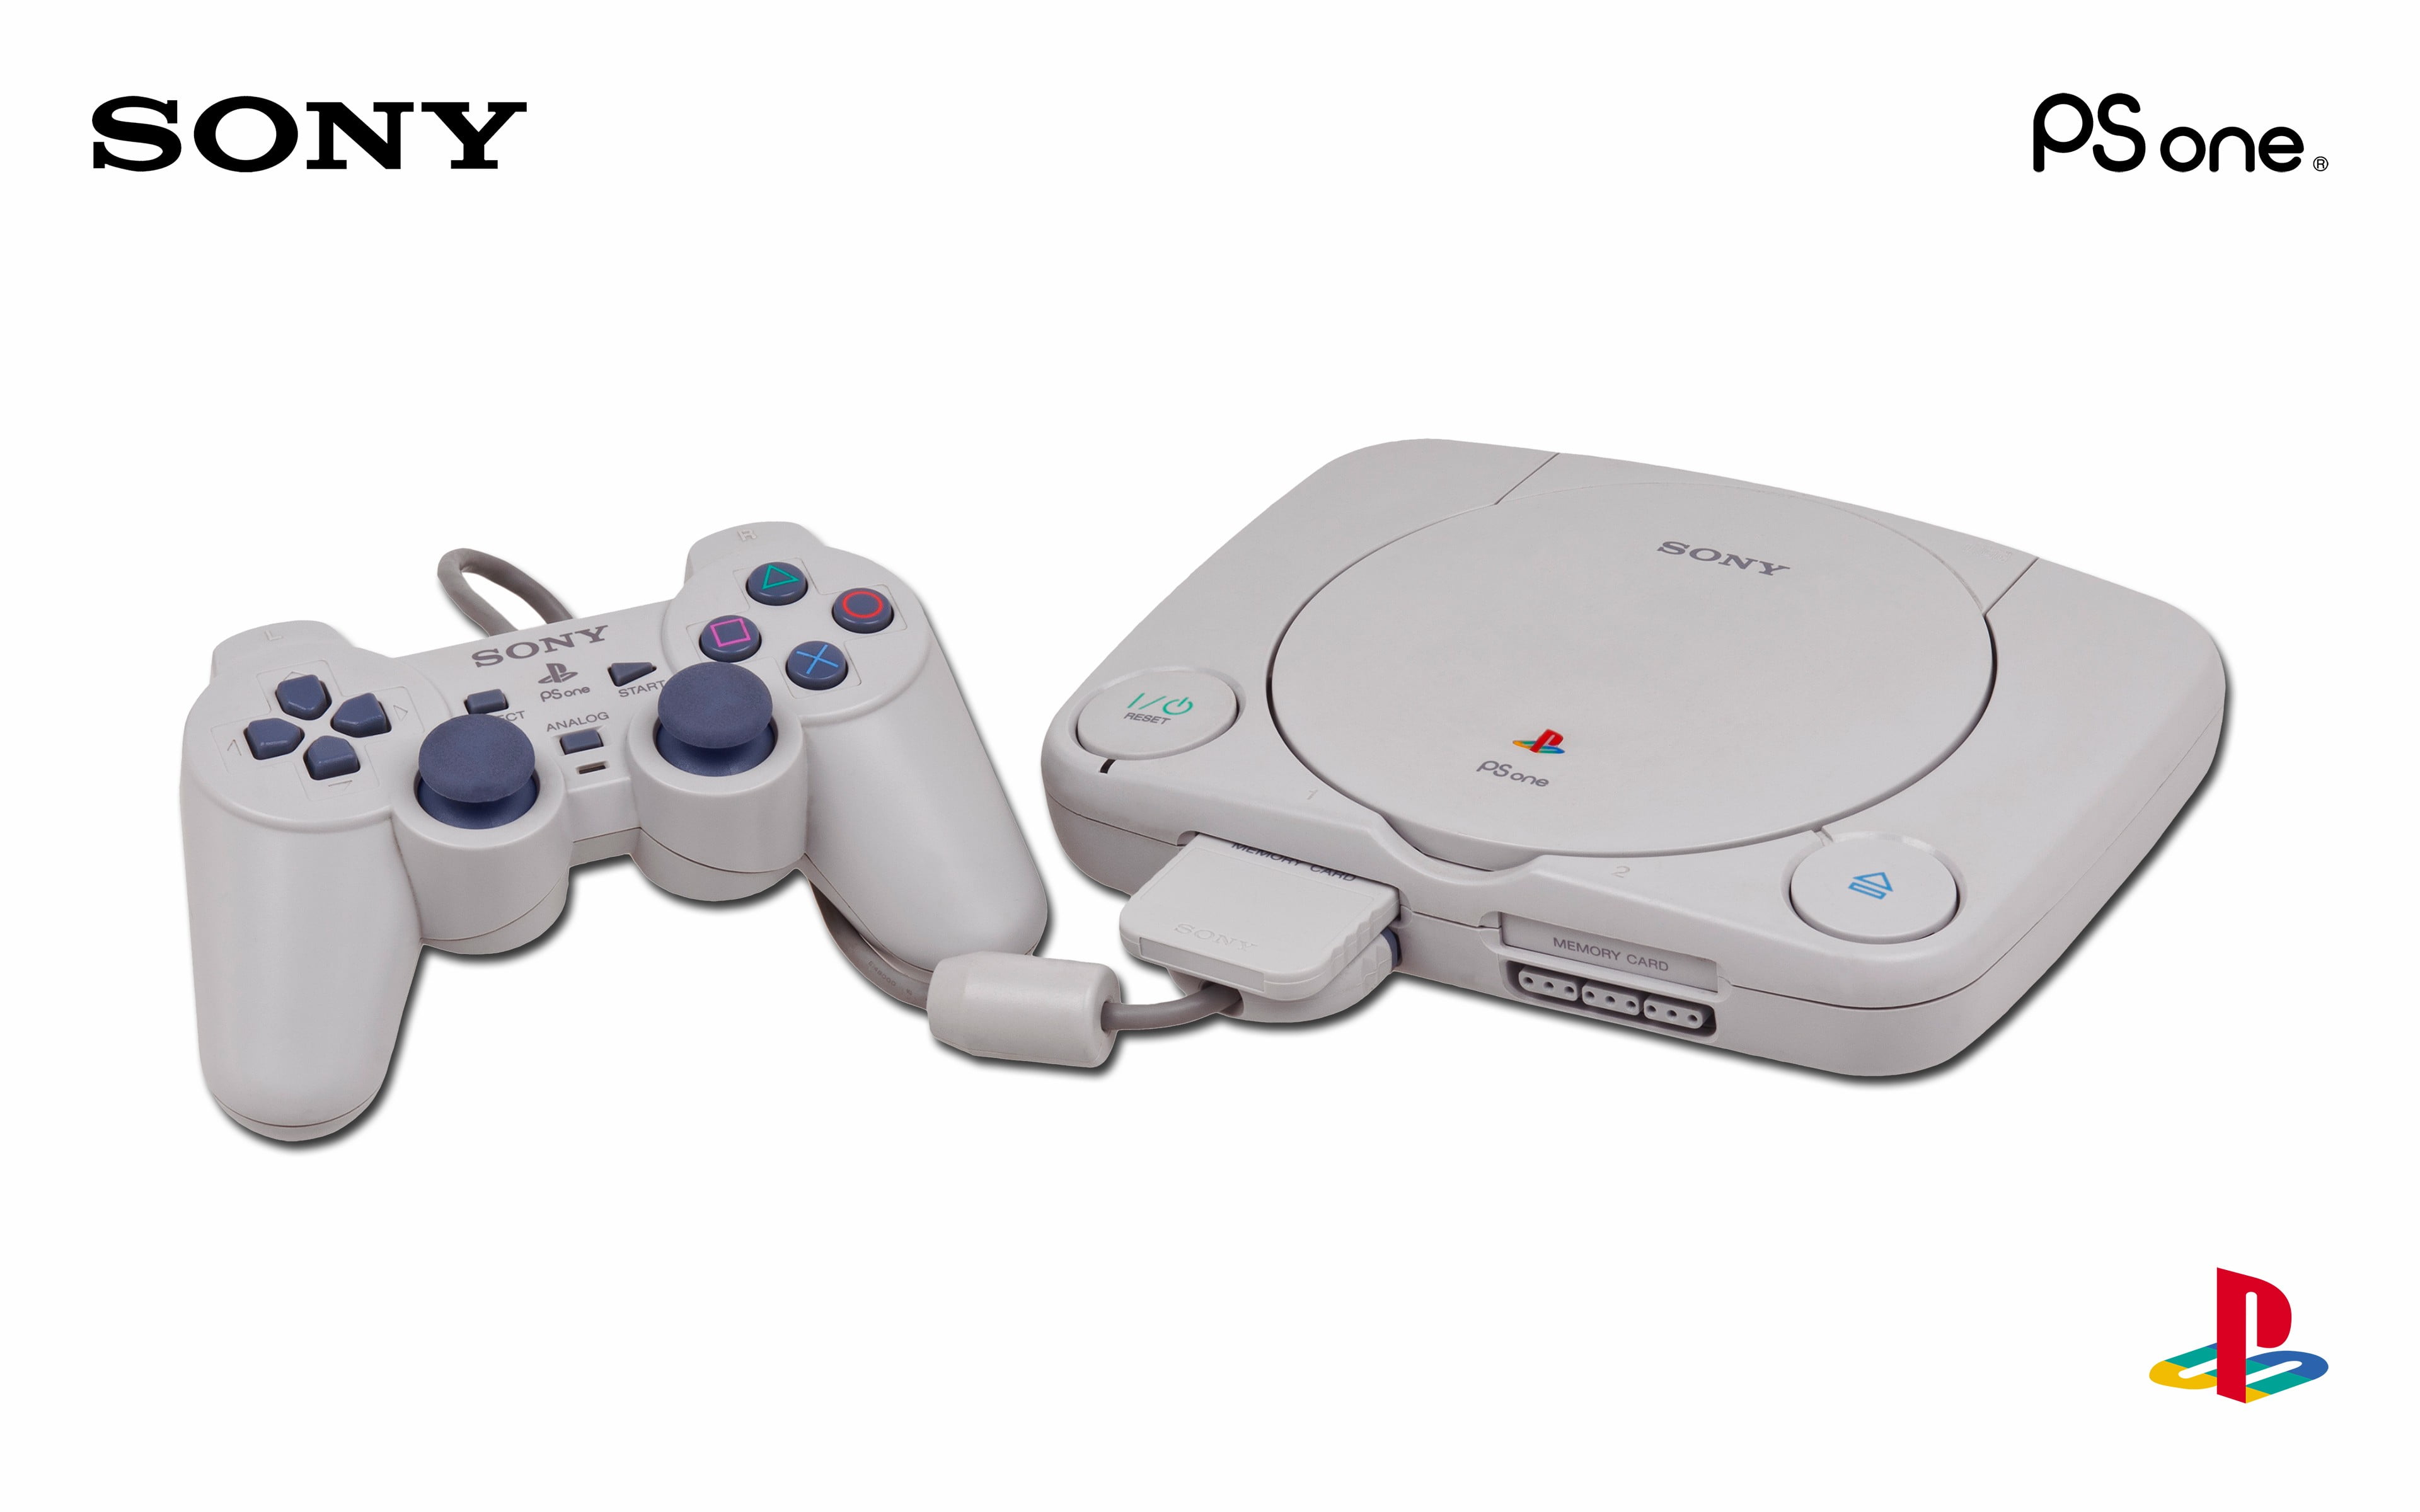 Sony playstation cfi 2000